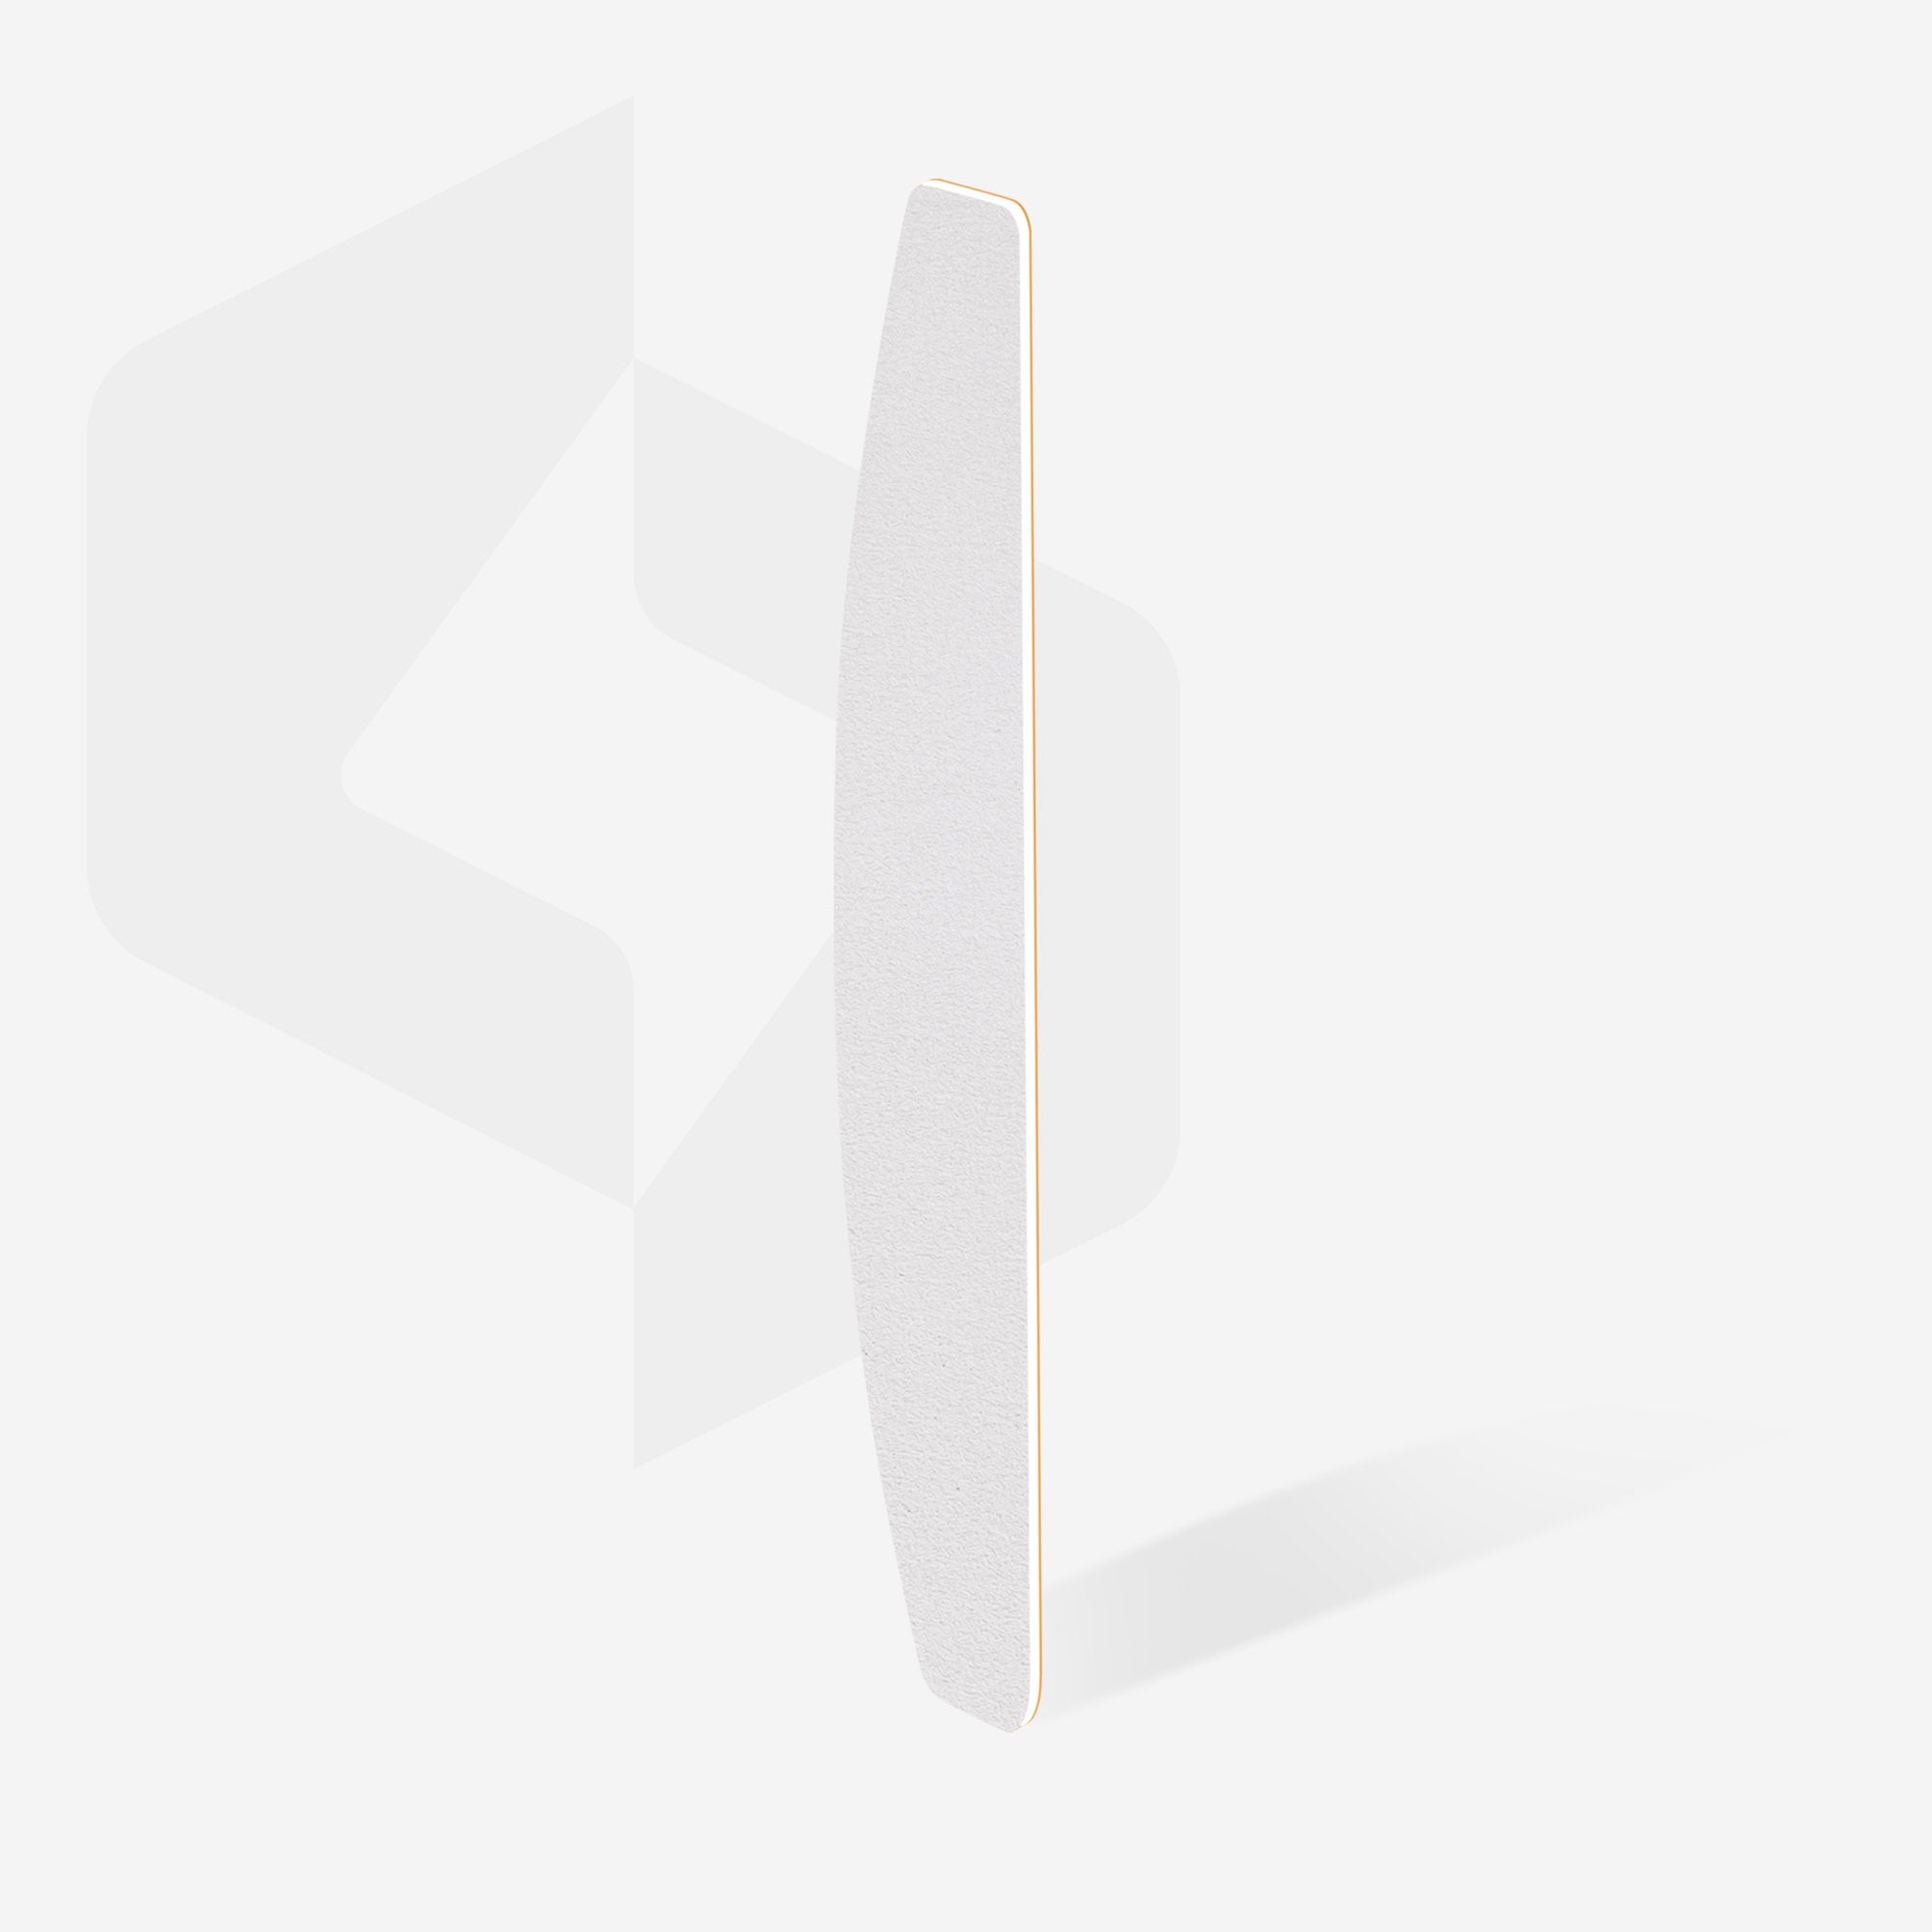 Bílé jednorázové pilníky na nehty s půlměsícovým pilníkem (soft base) EXPERT 40 (30 ks)